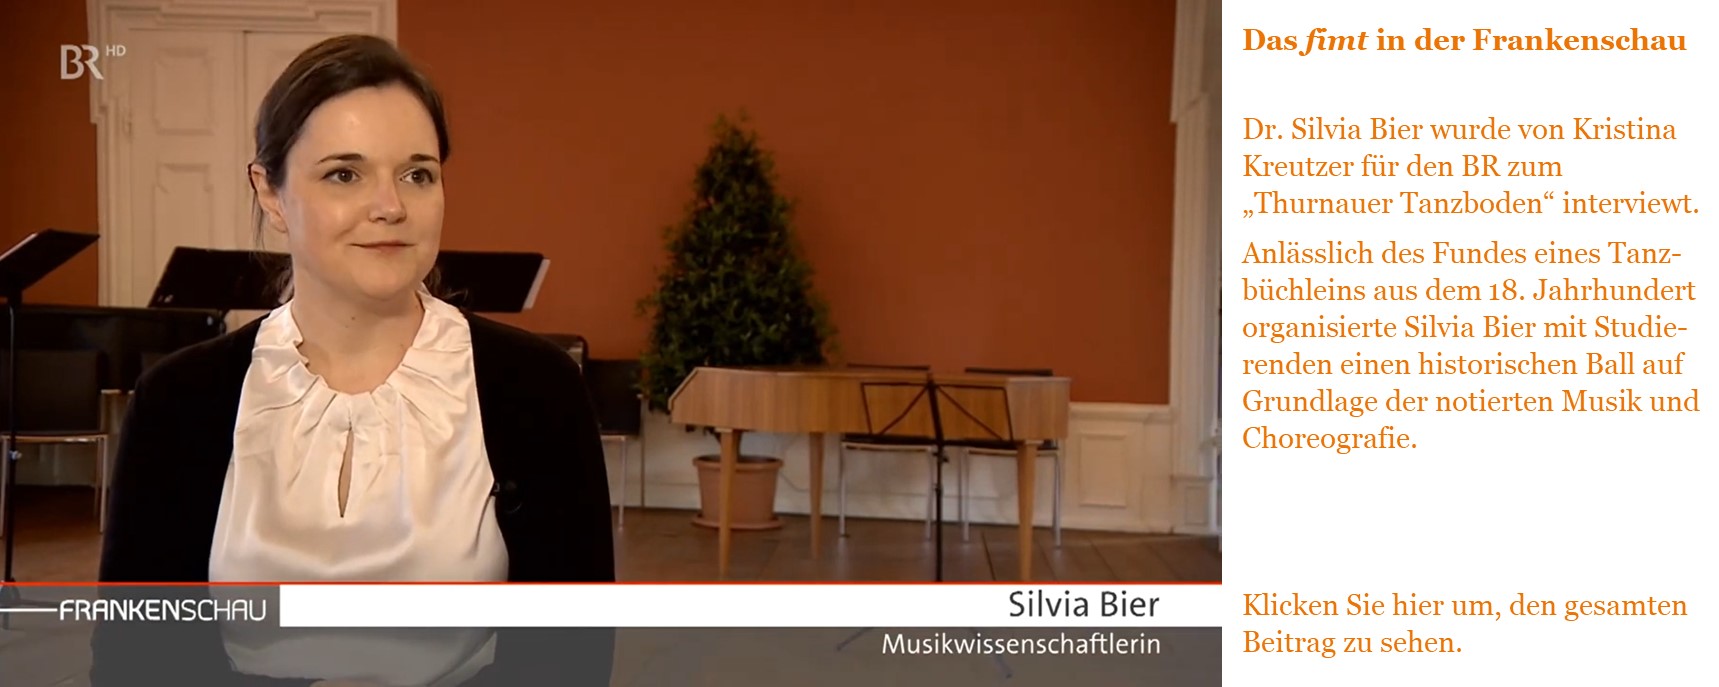 Das fimt in der Frankenschau  Dr. Silvia Bier wurde von Kristina Kreutzer für den BR zum „Thurnauer Tanzboden“ interviewt.  Anlässlich des Fundes eines Tanzbüchleins aus dem 18. Jahrhundert organisierte Silvia Bier mit Studierenden einen historischen